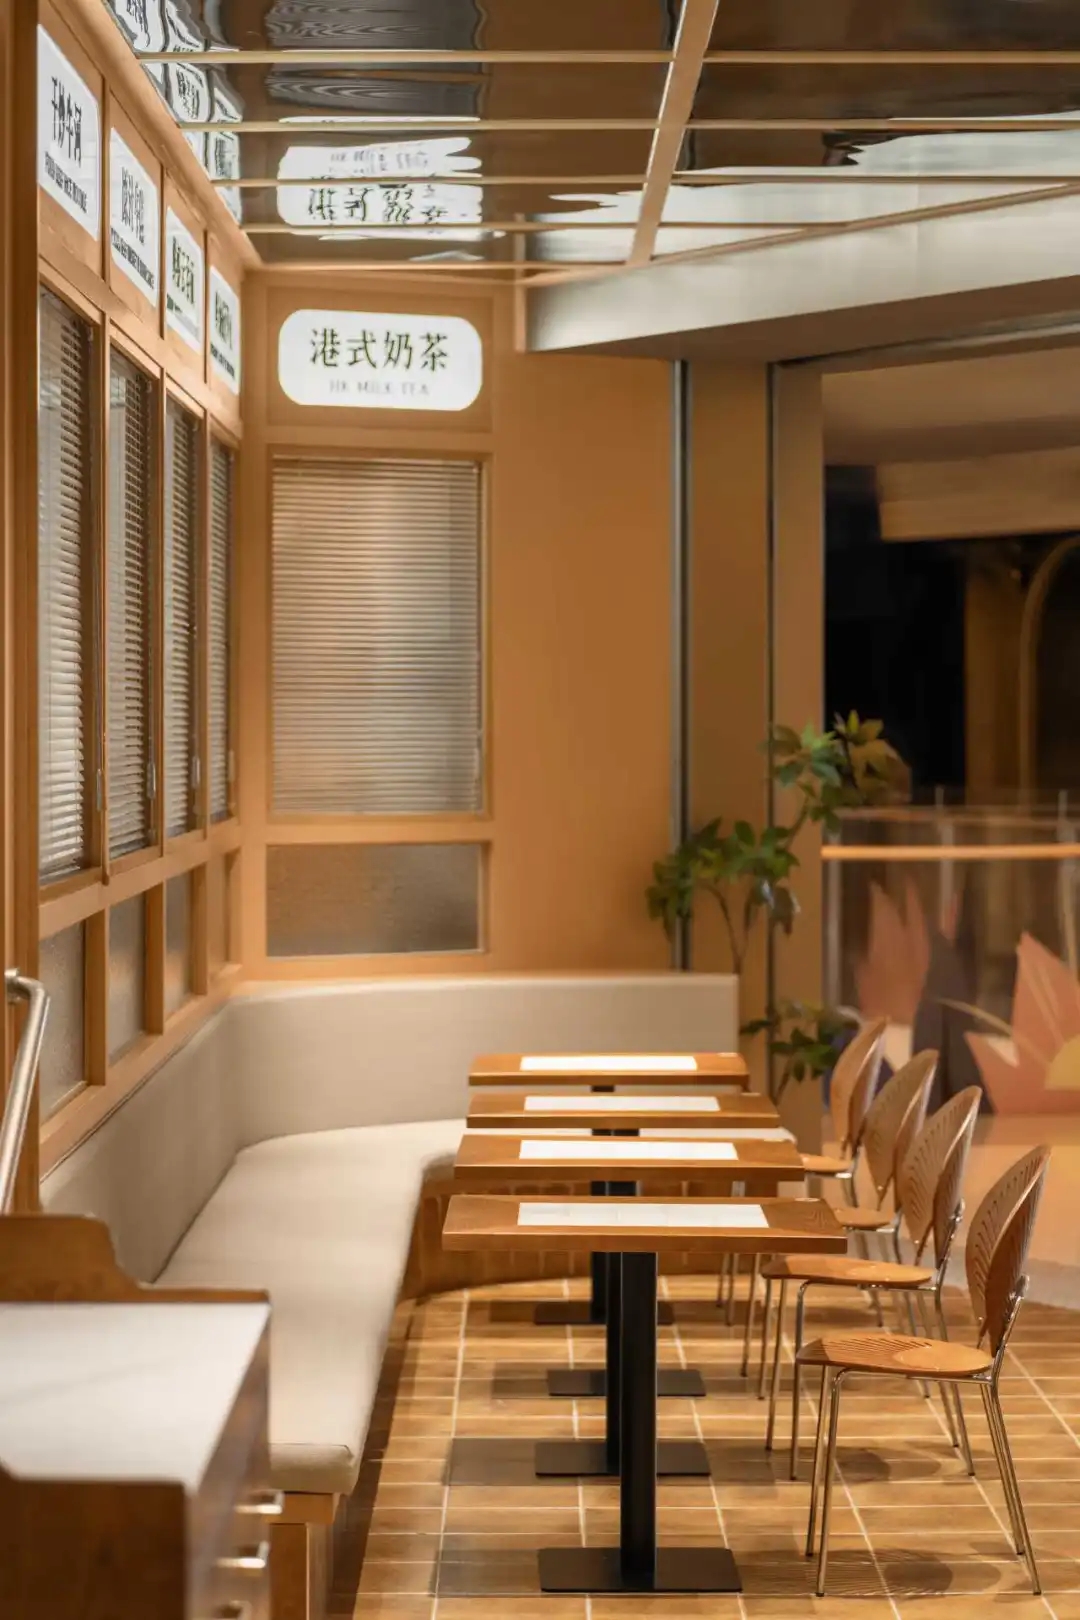 突破古板  温暖清新的港久茶餐厅装修设计计划(图6)